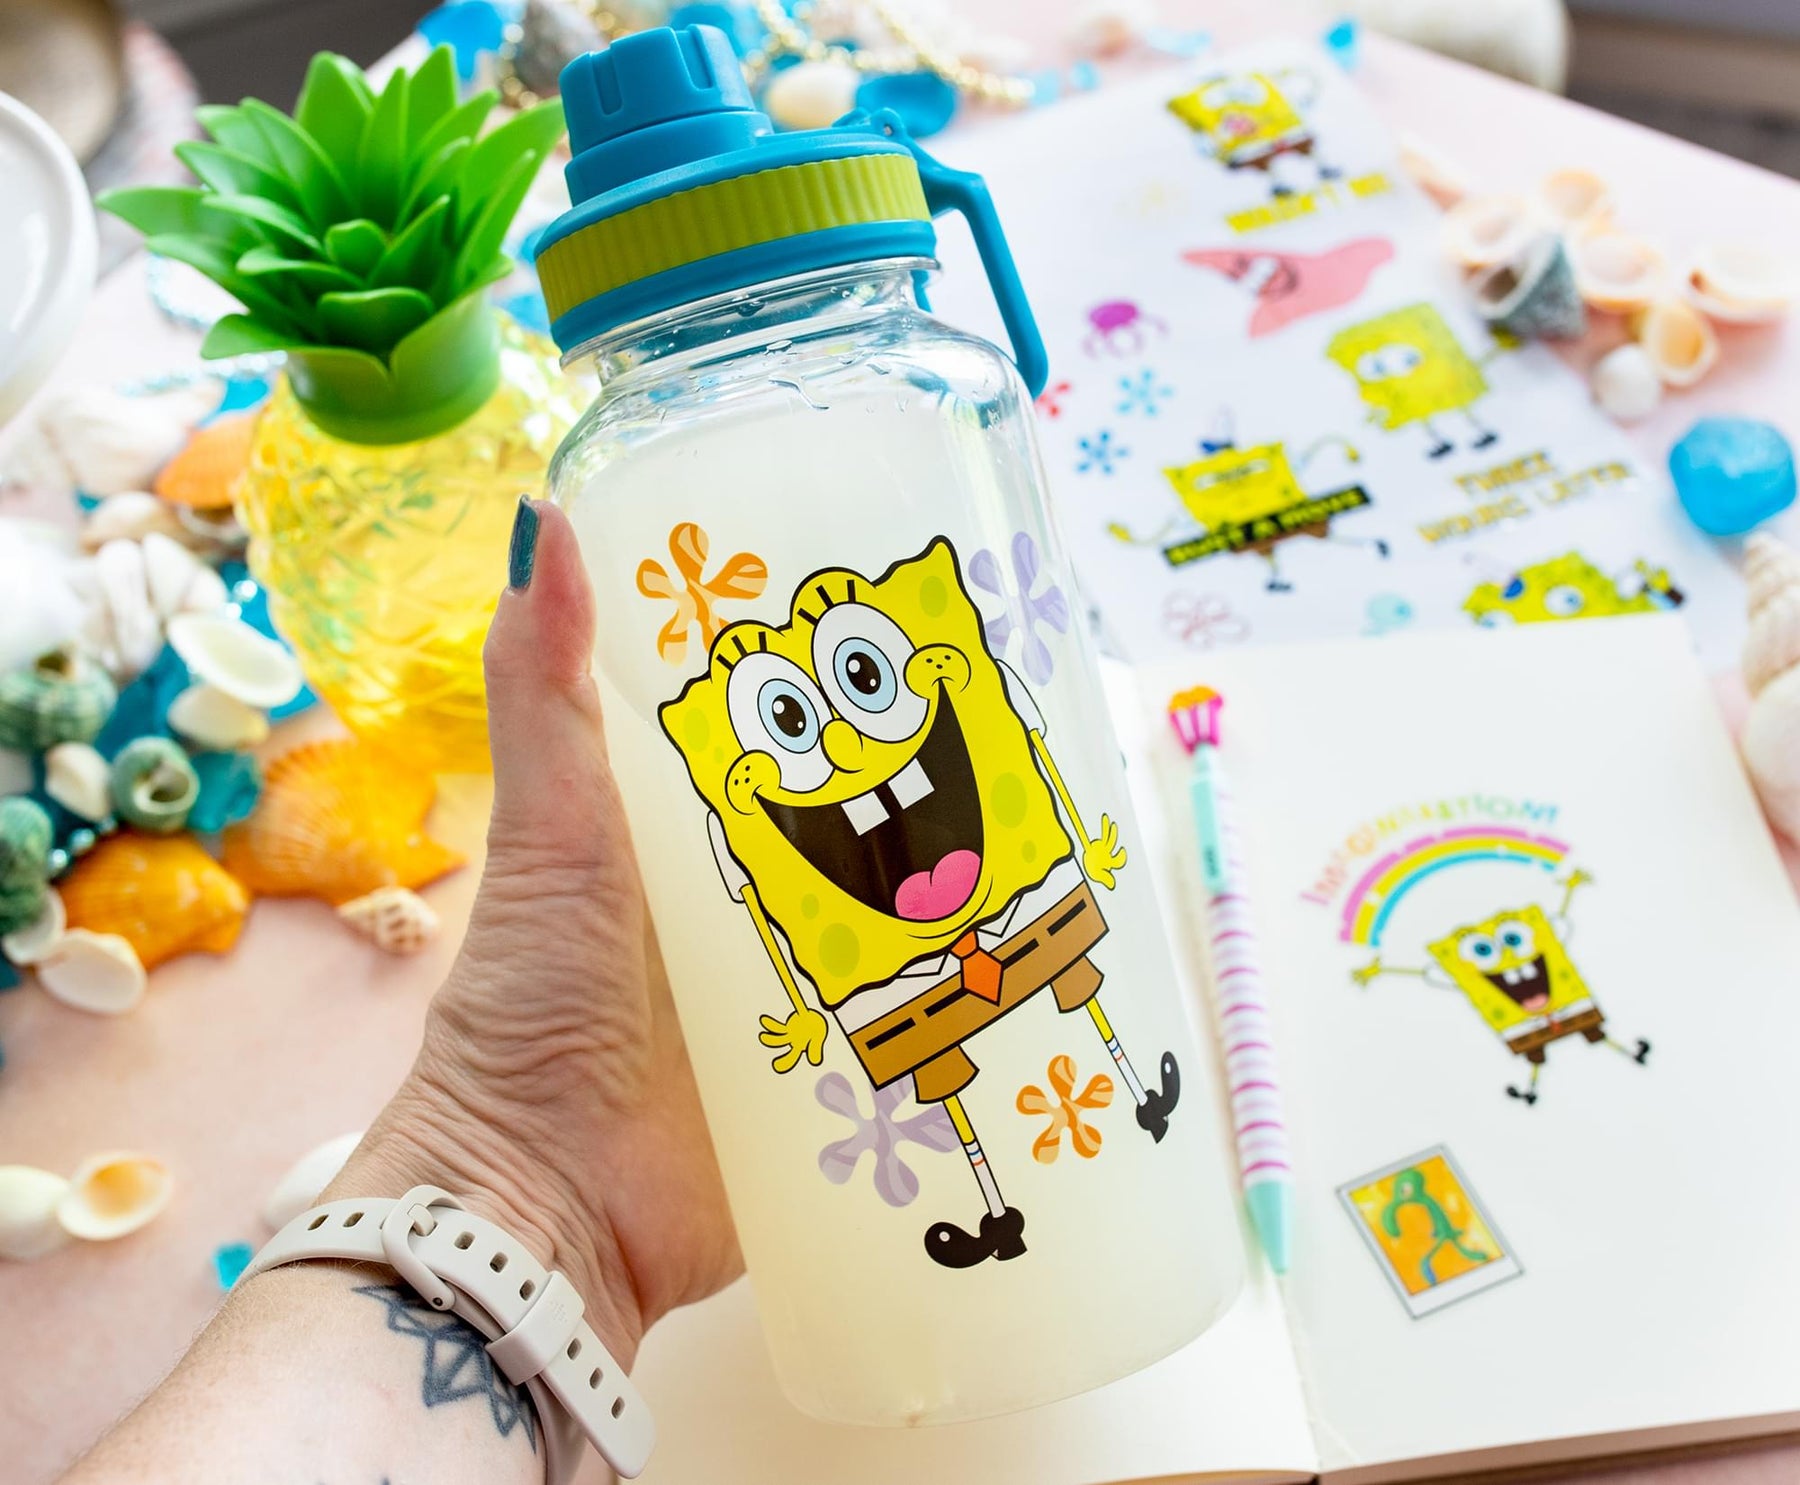 Spongebob32oz Twist Spout Bottle w/ Stickers